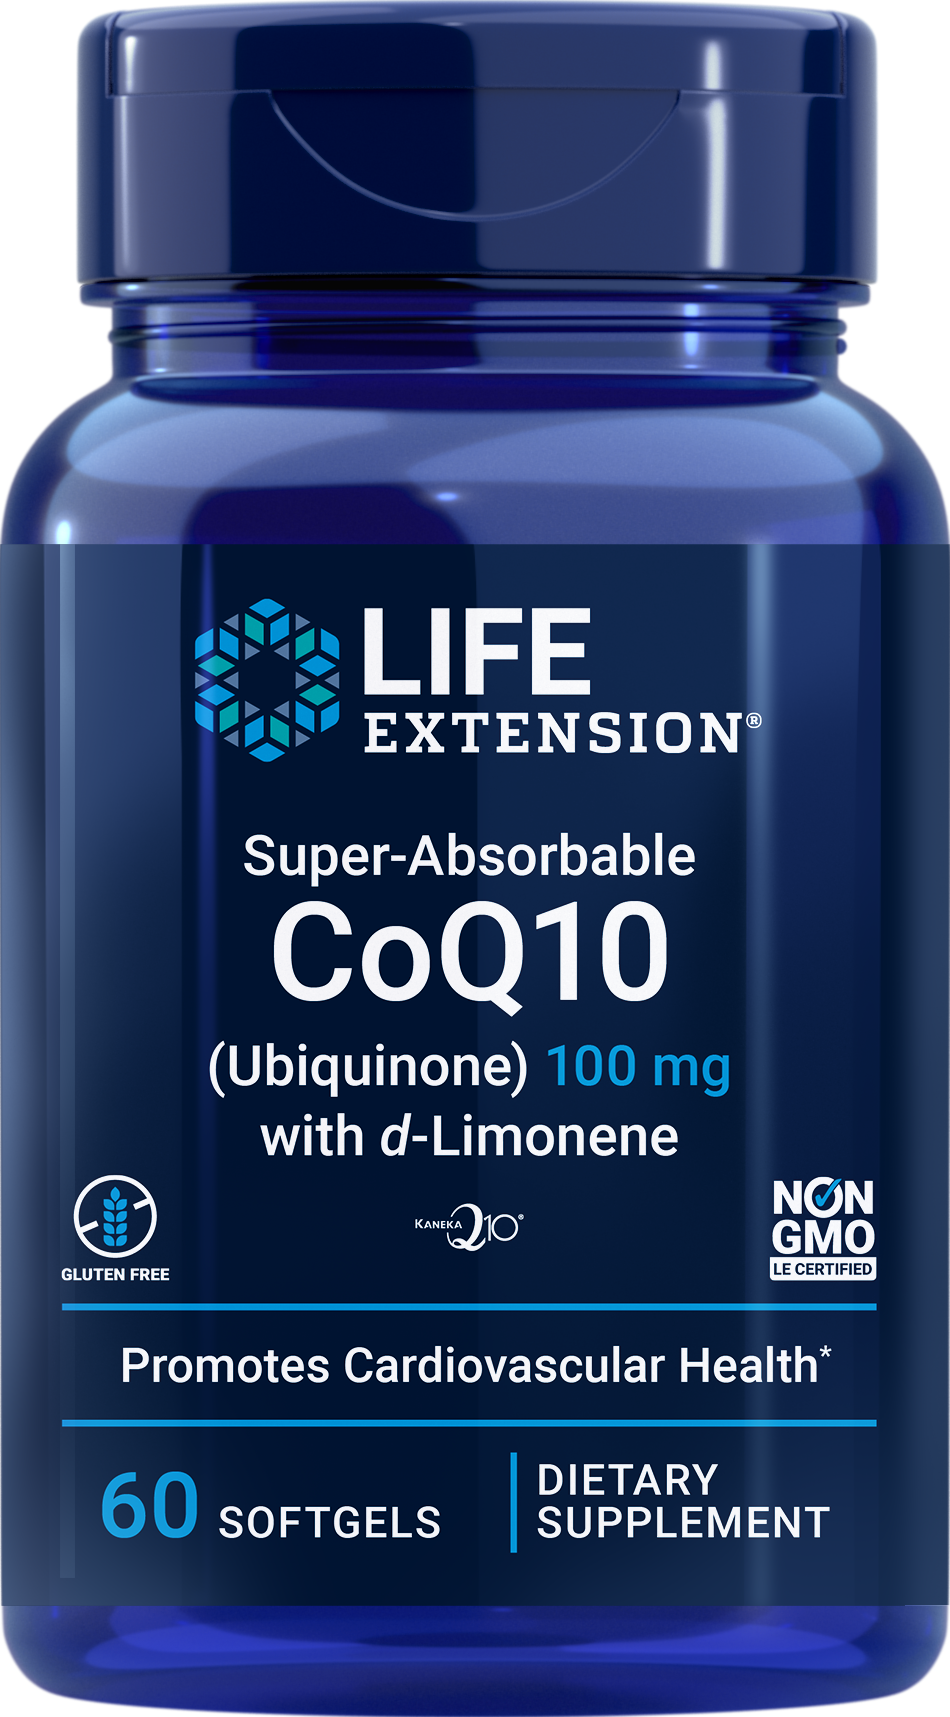 Super-Absorbable Ubiquinone CoQ10 with d-Limonene